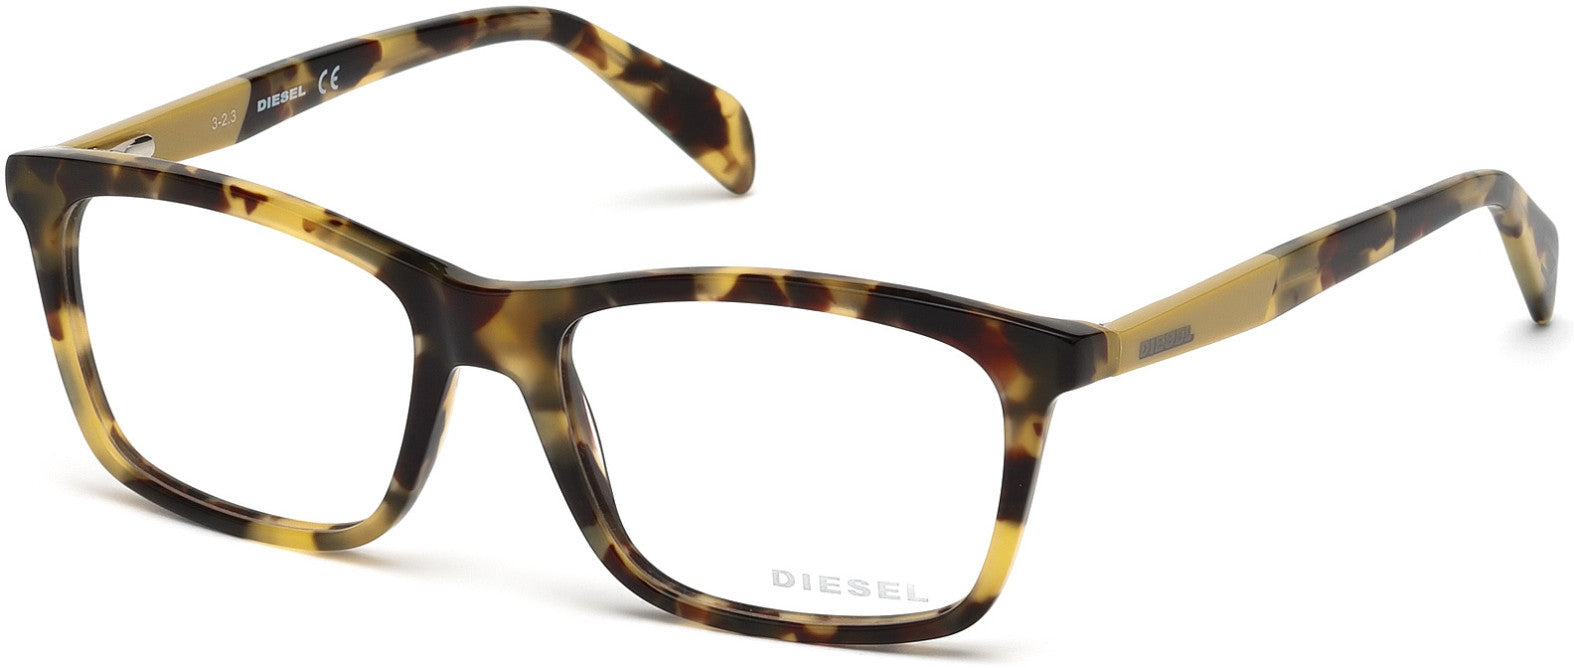 Diesel DL5089 Geometric Eyeglasses 052-052 - Dark Havana